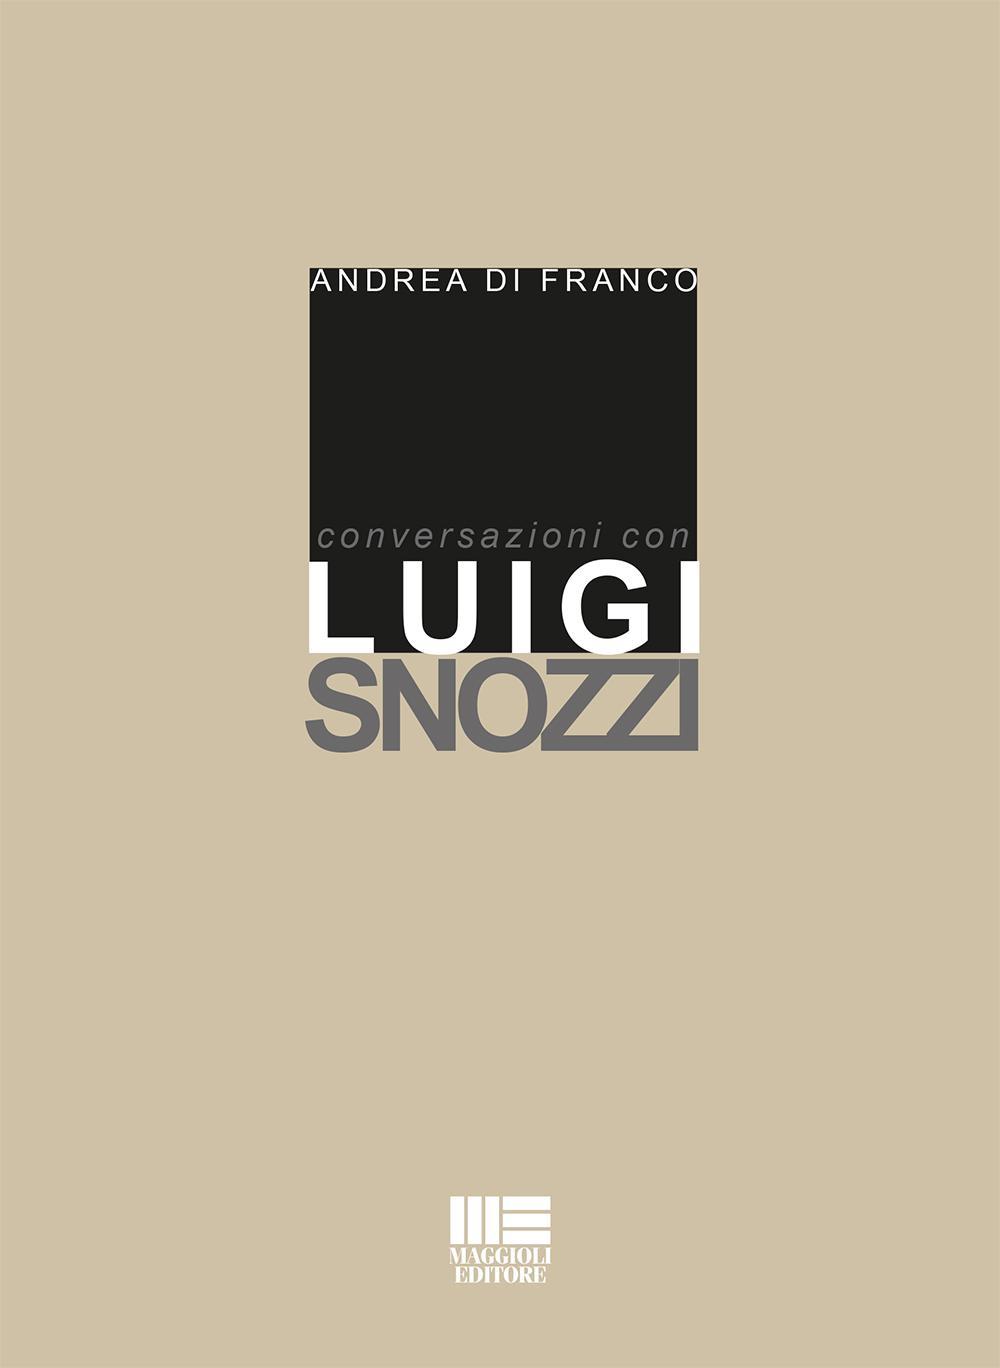 Kniha Conversazioni con Luigi Snozzi Andrea Di Franco